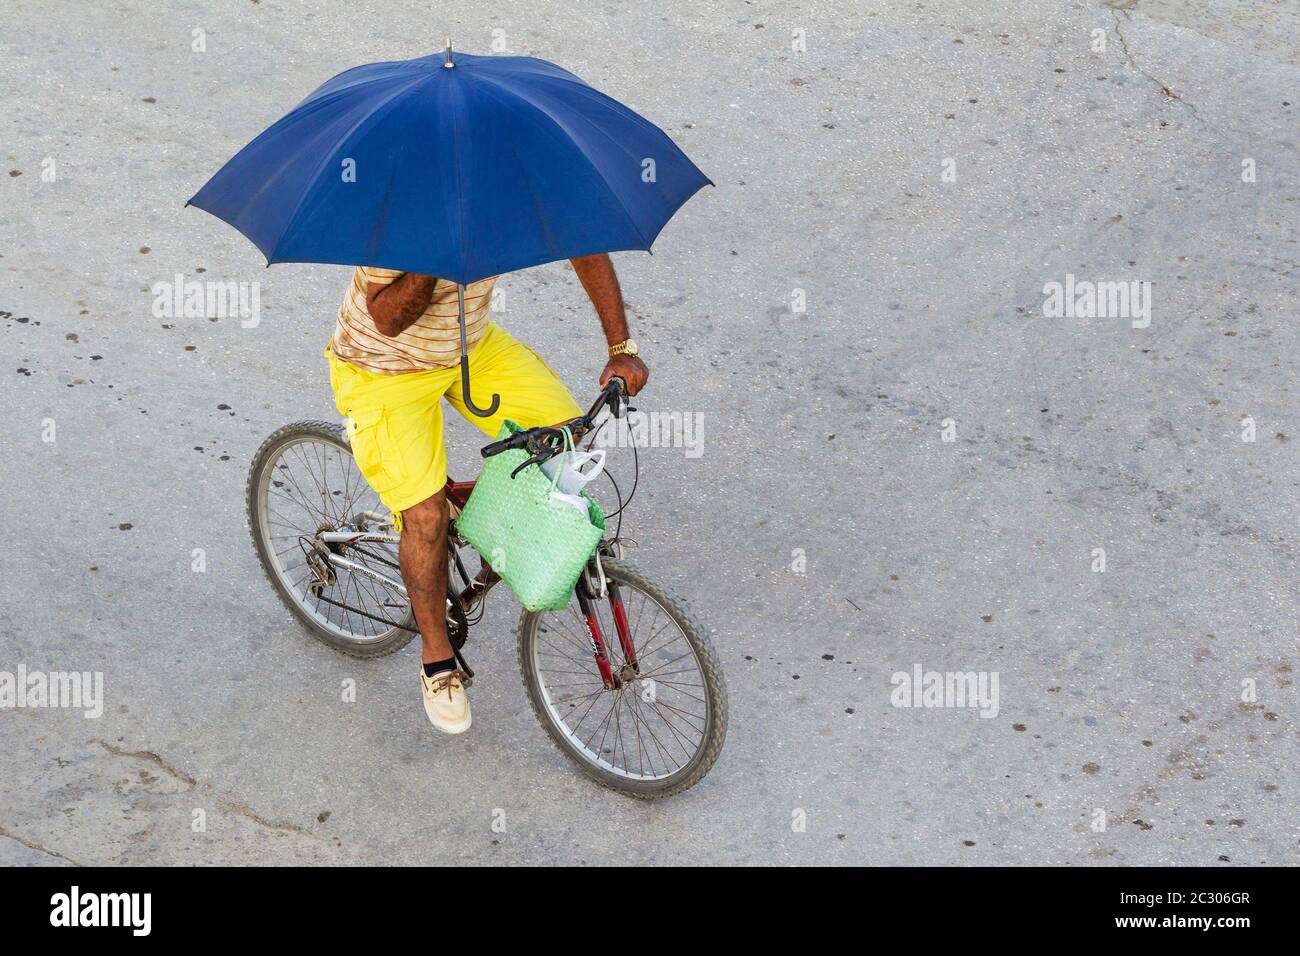 Cyclist using an umbrella as sunshade, Niquero, Cuba Stock Photo